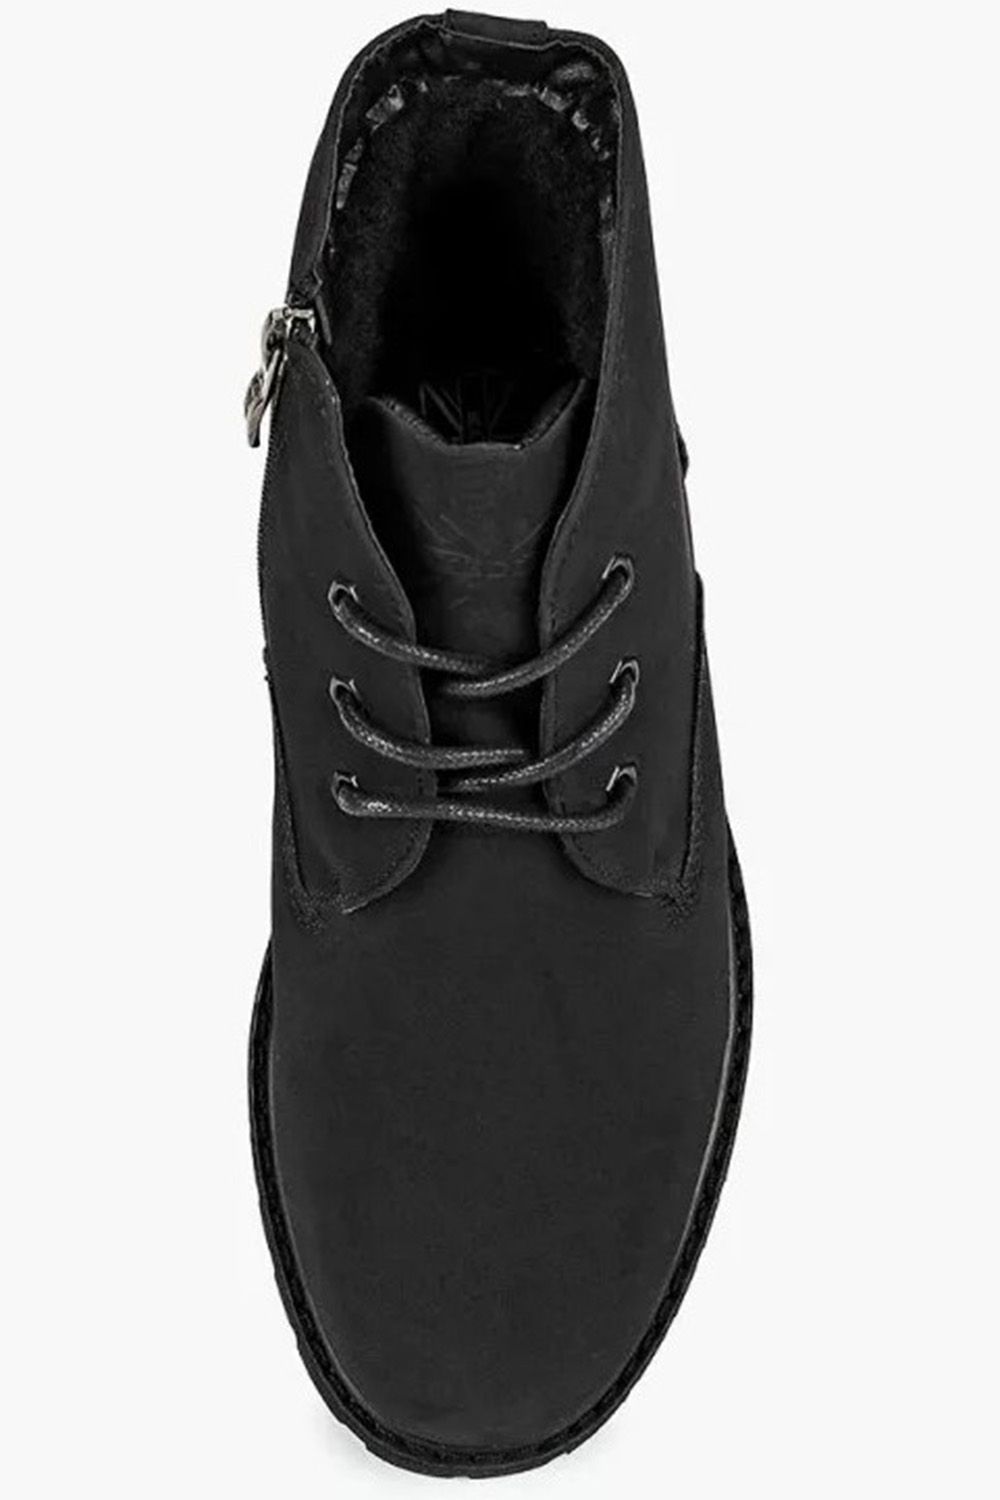 Ботинки Keddo, размер 38, цвет черный - фото 3